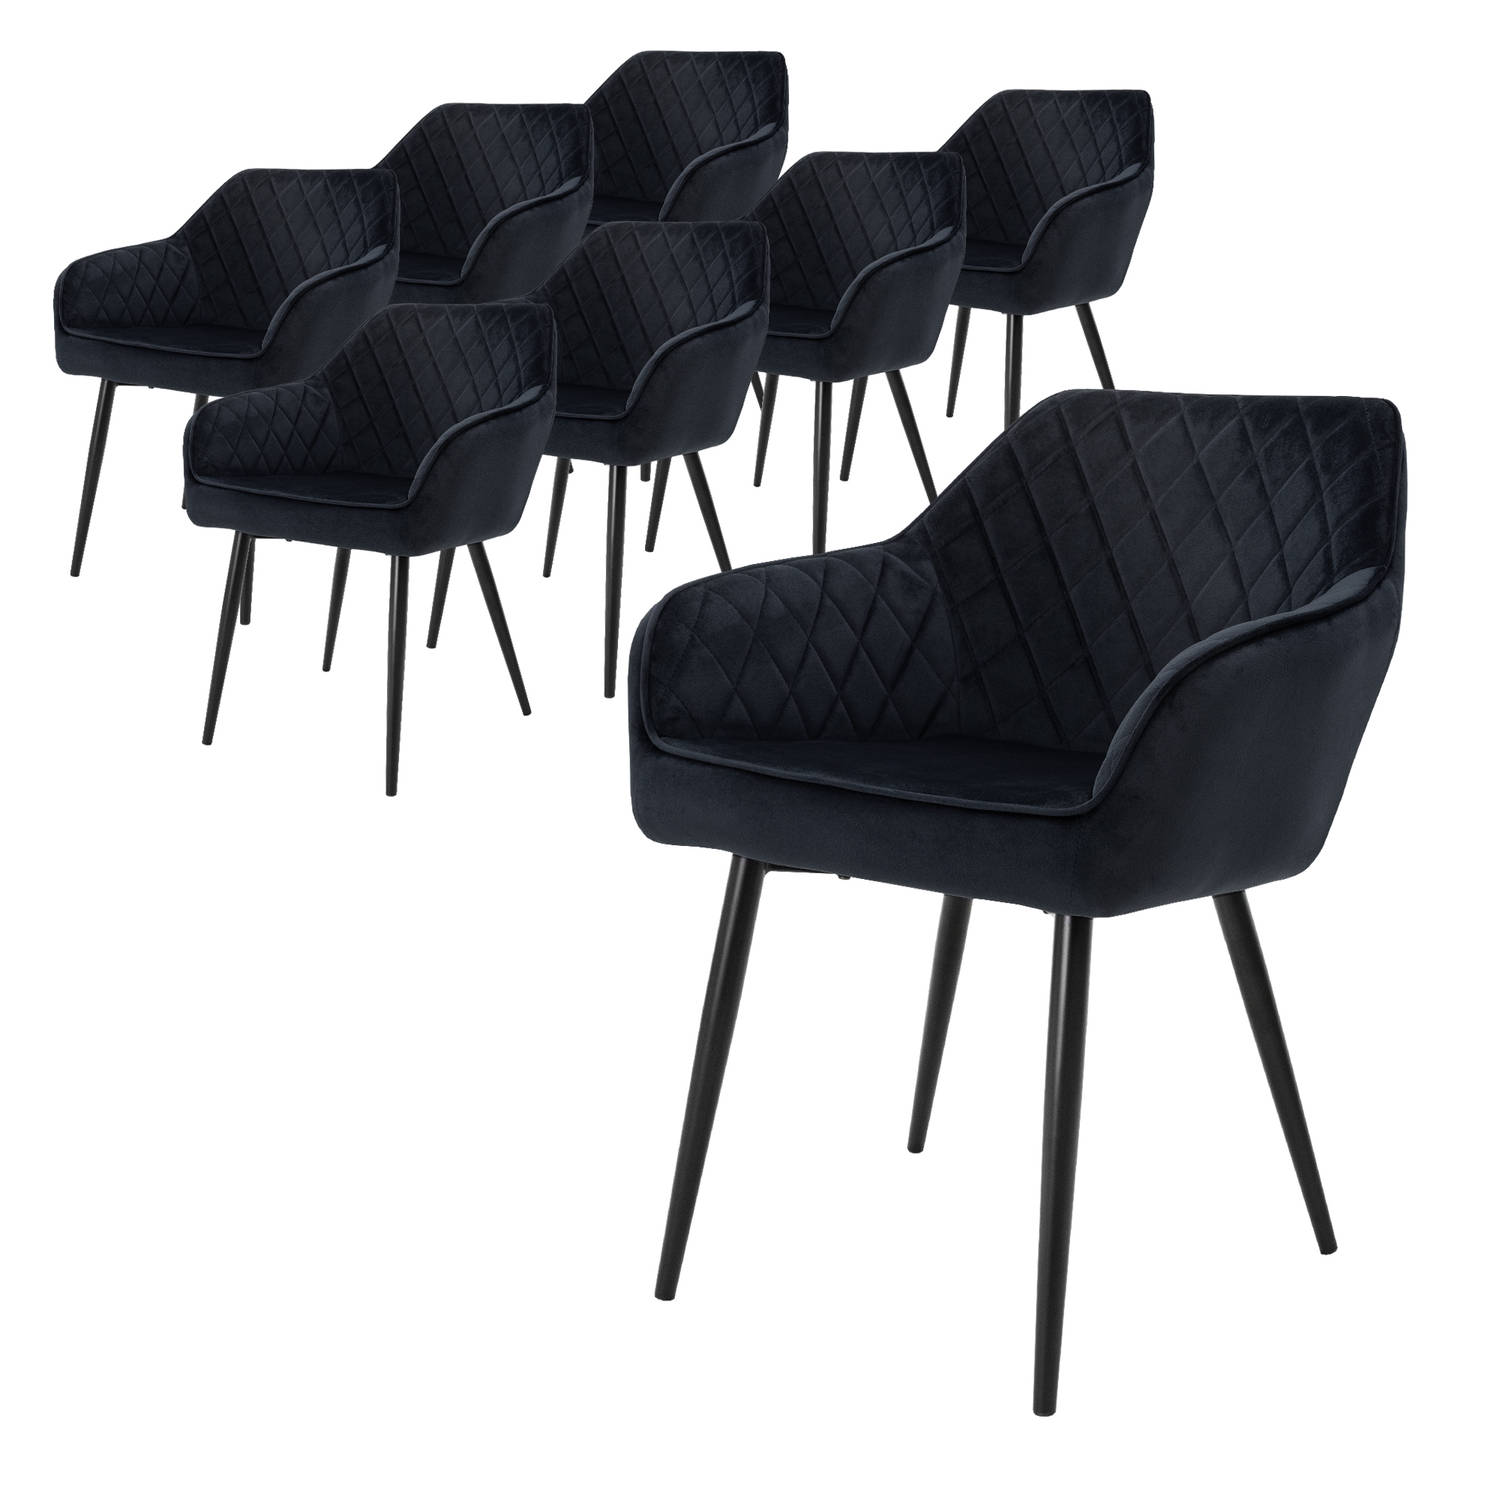 ML-Design Set van 8 eetkamerstoelen met armleuning en rugleuning, zwart, keukenstoel met fluwelen bekleding, gestoffeerde stoel met metalen poten, ergonomische stoel voor eettafel,